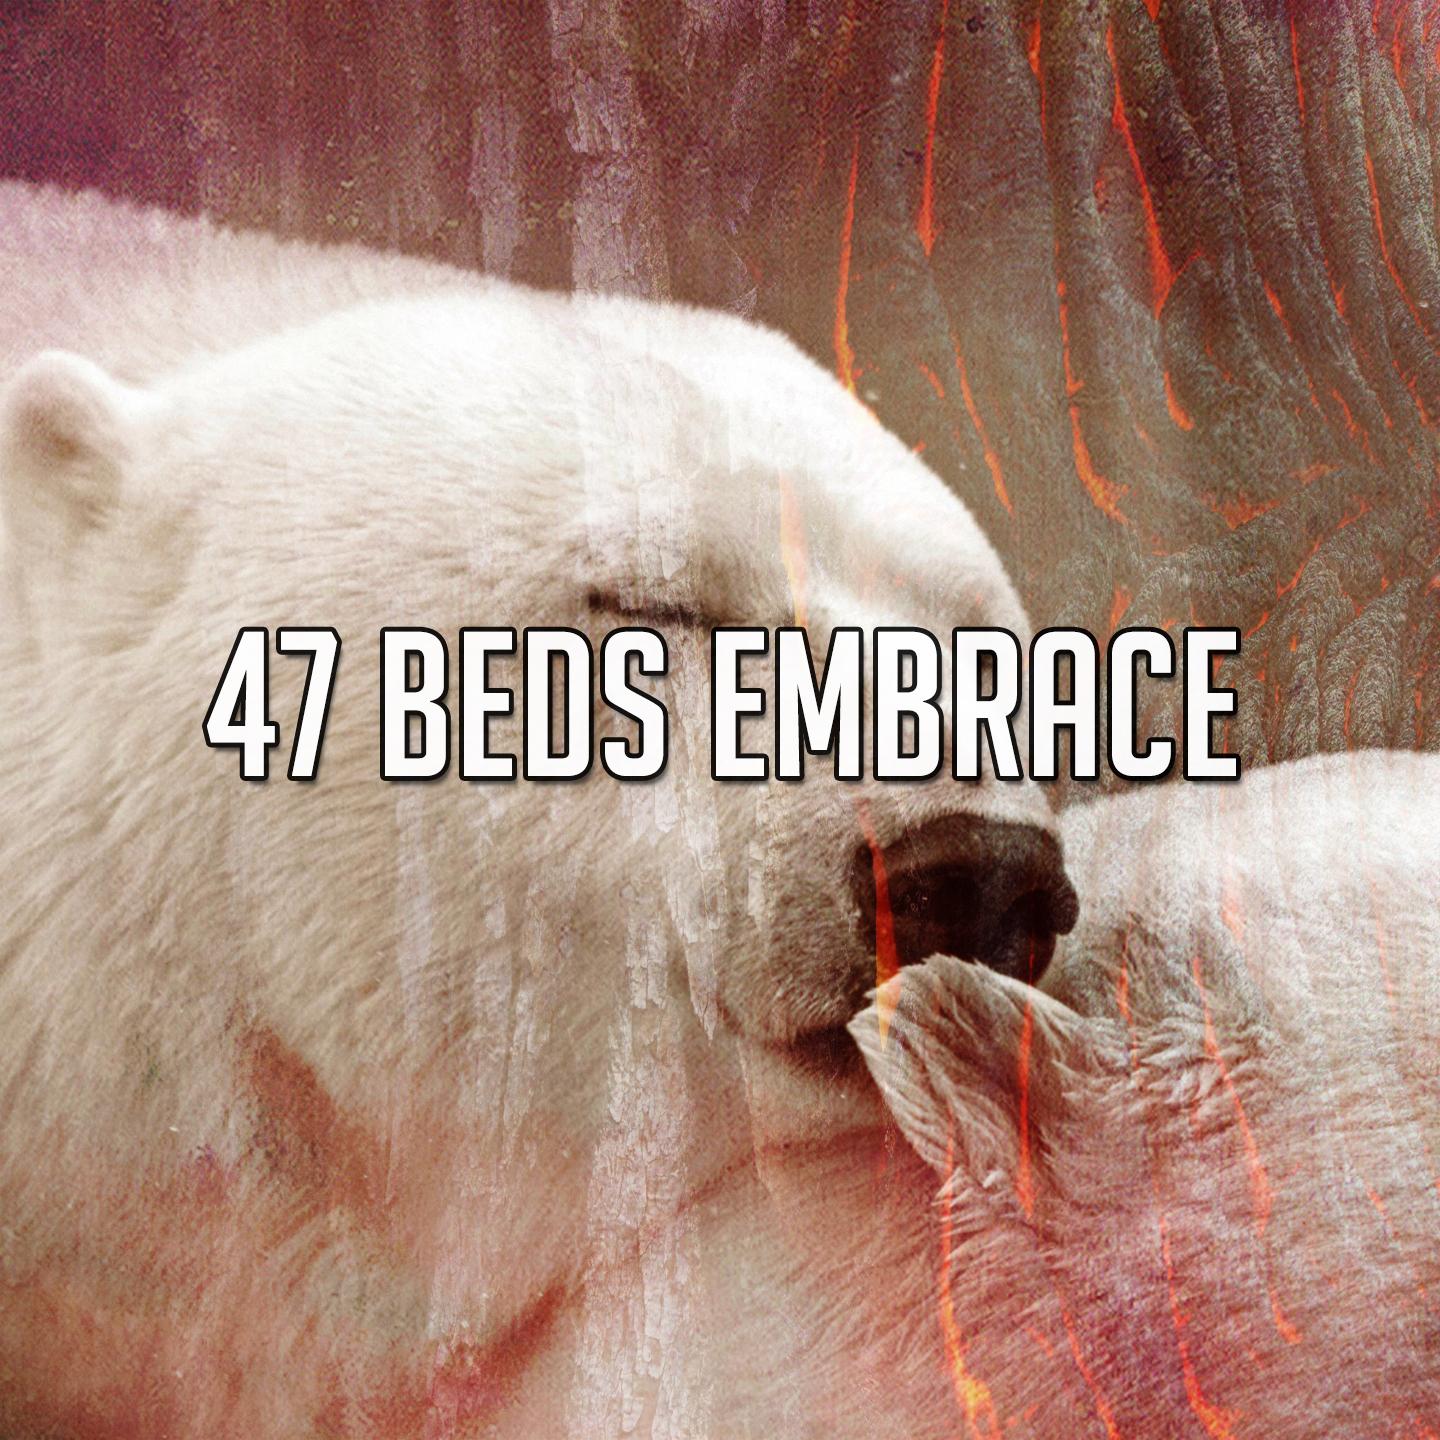 47 Beds Embrace